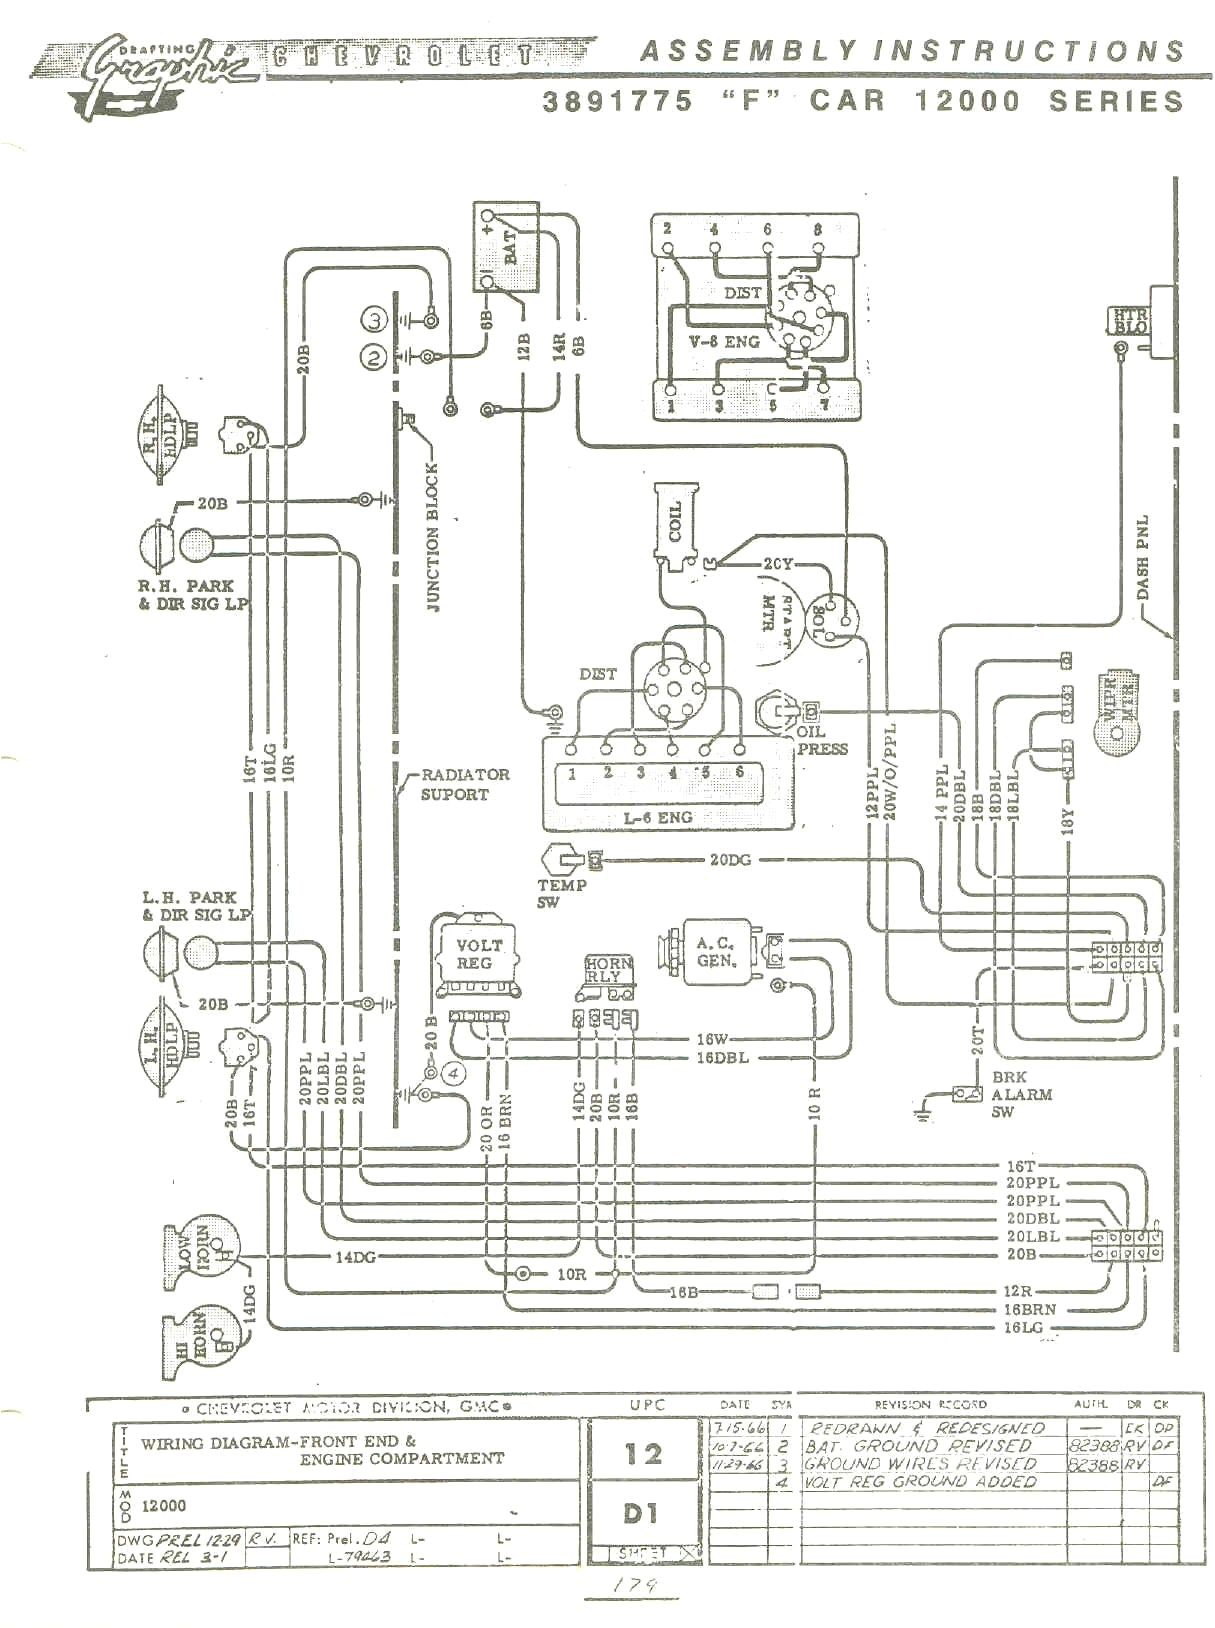 67 camaro wiring harness schematic